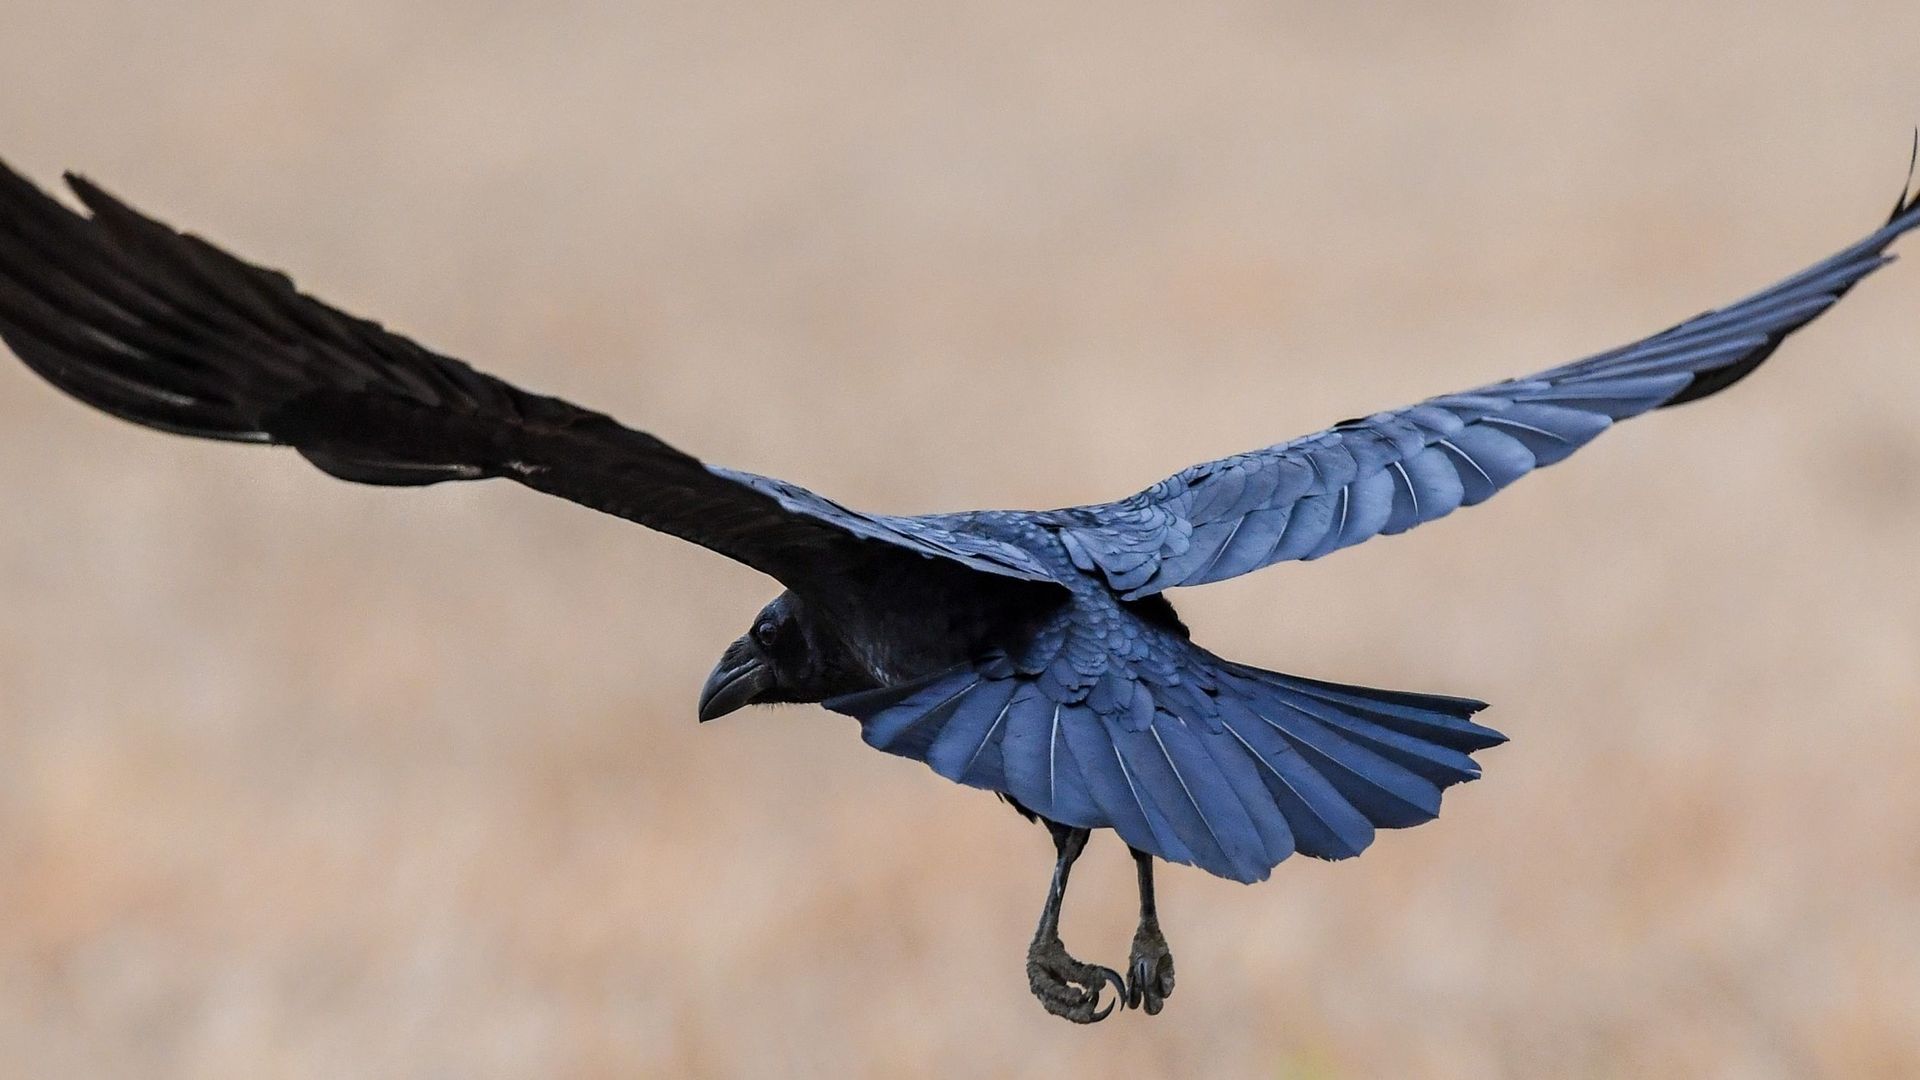 Des corbeaux capables de reproduire un objet de mémoire